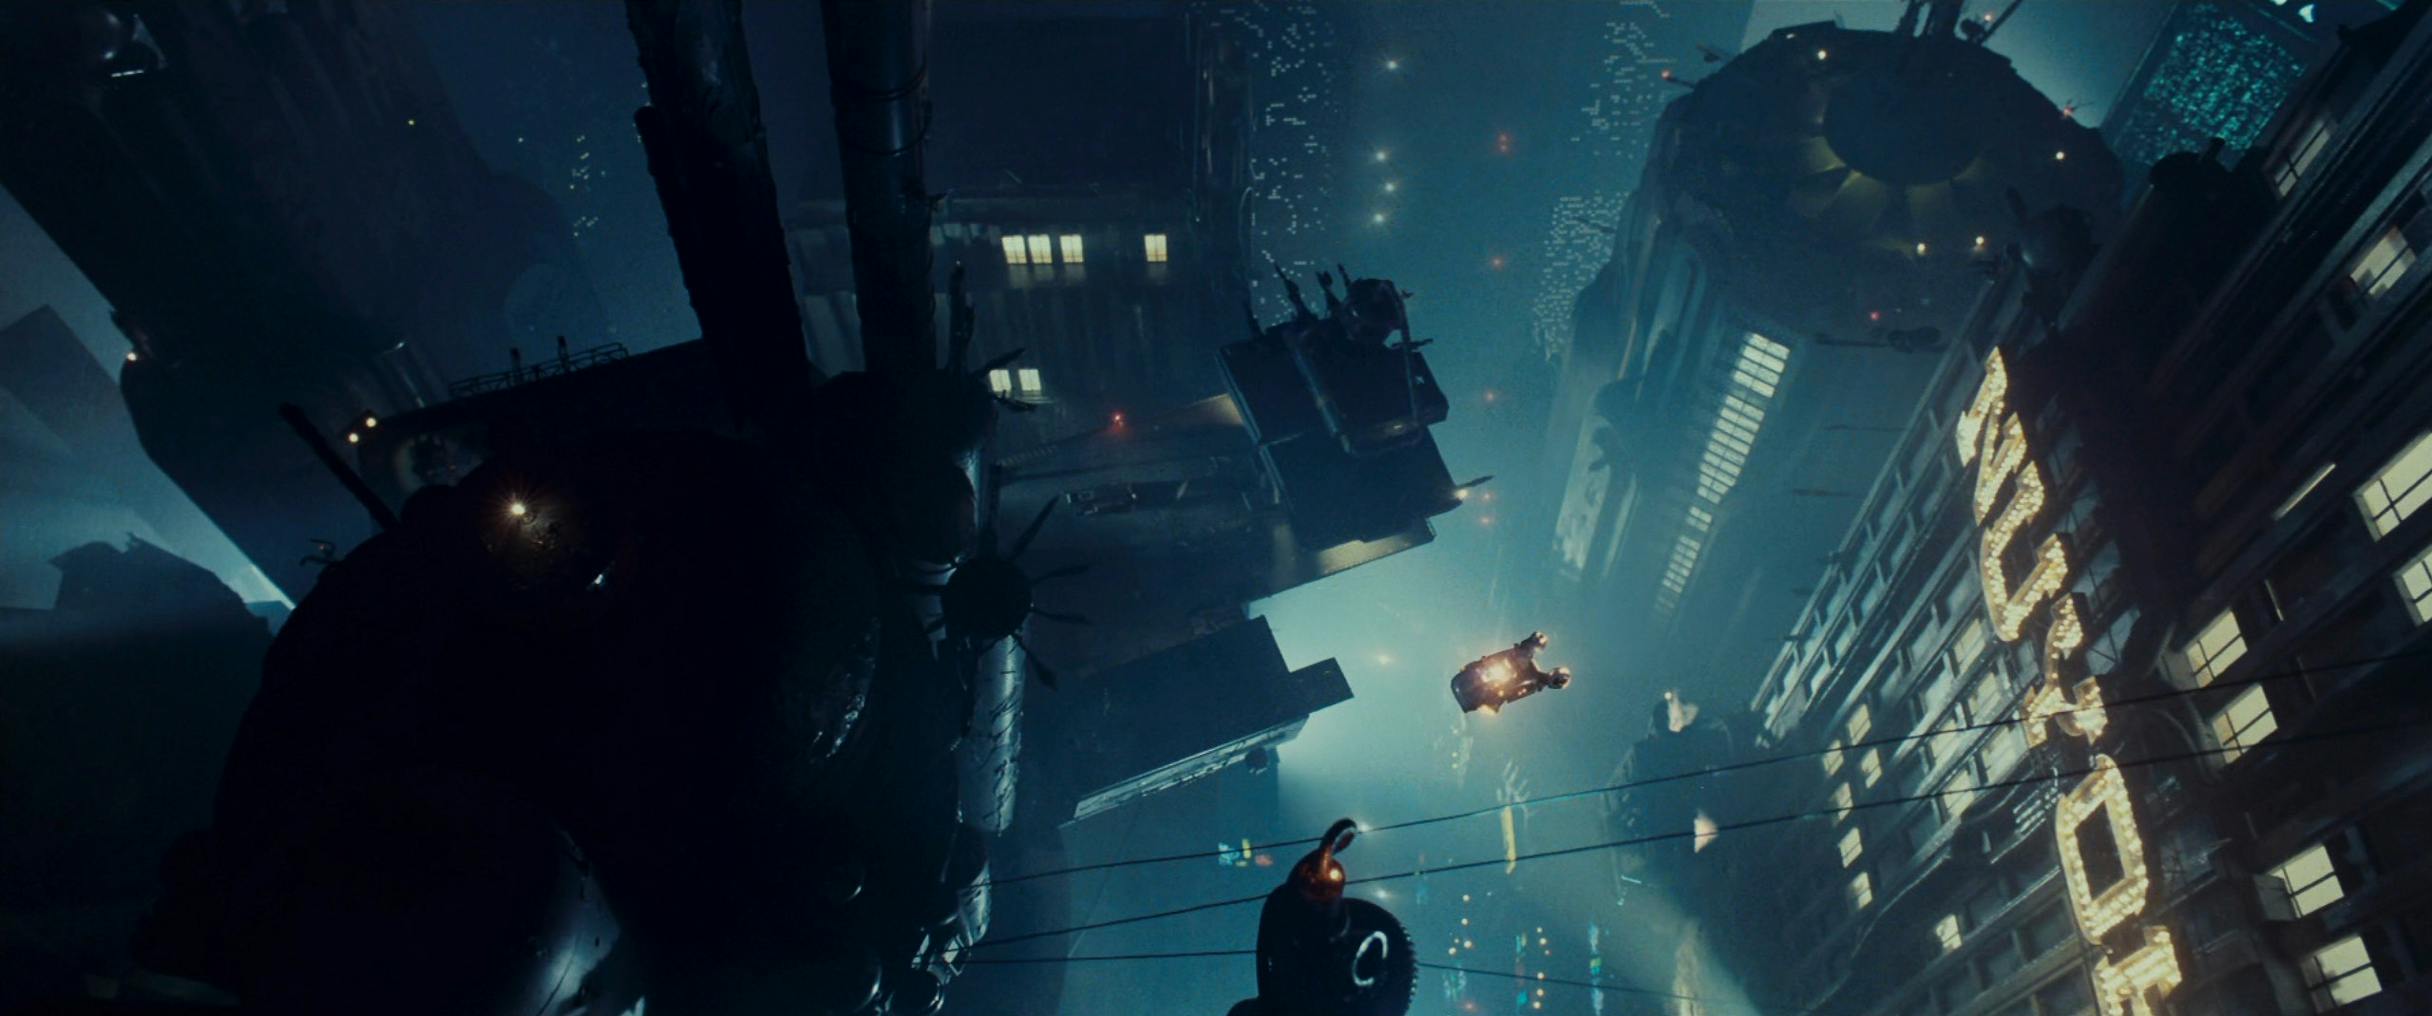 Blade Runner Bild